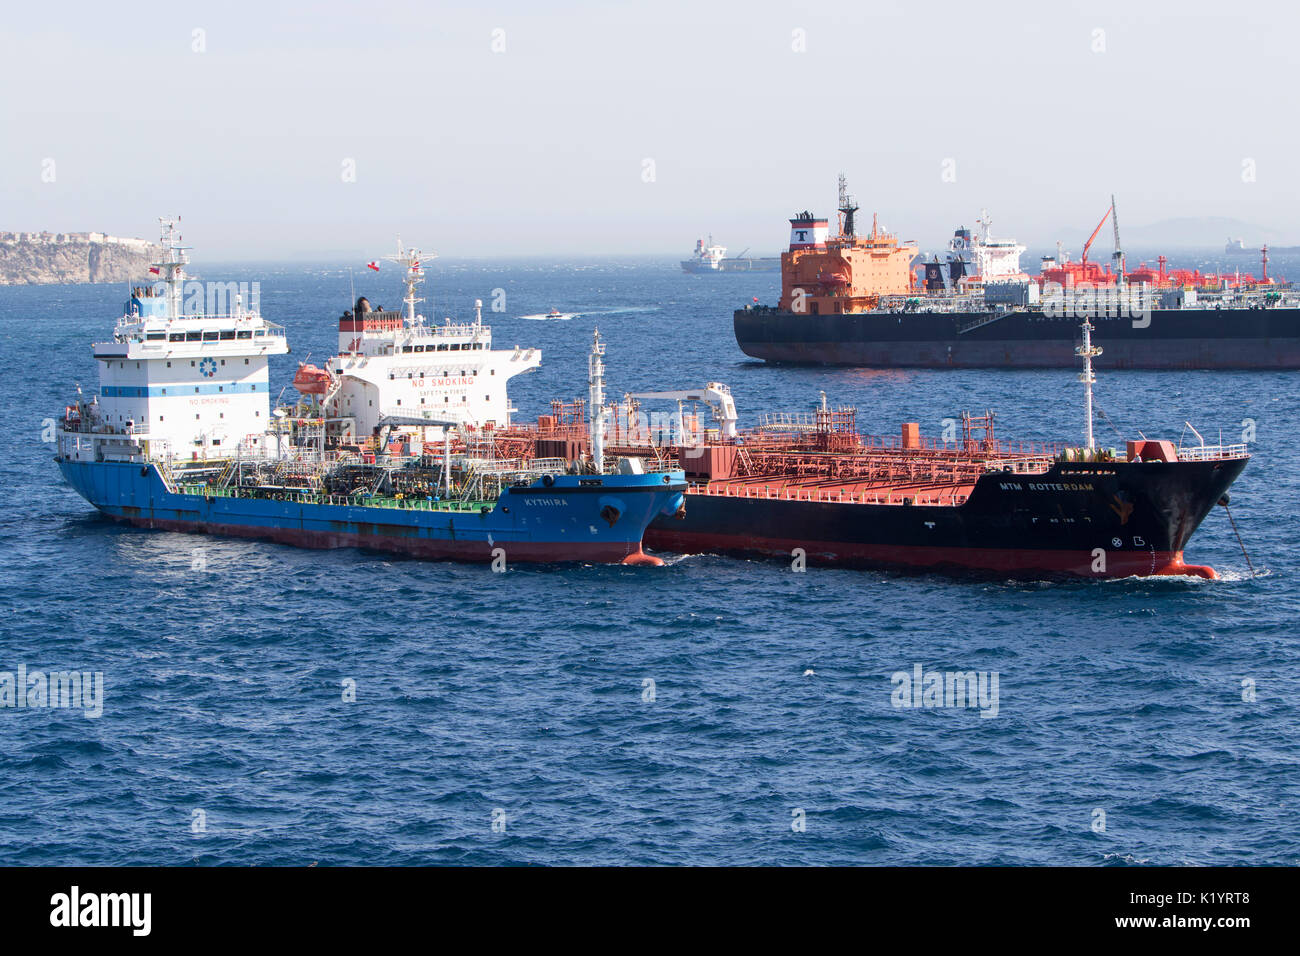 MTM Rotterdam tanker cisterna para productos químicos y petróleo crudo del buque atracado en Gibraltar Foto de stock